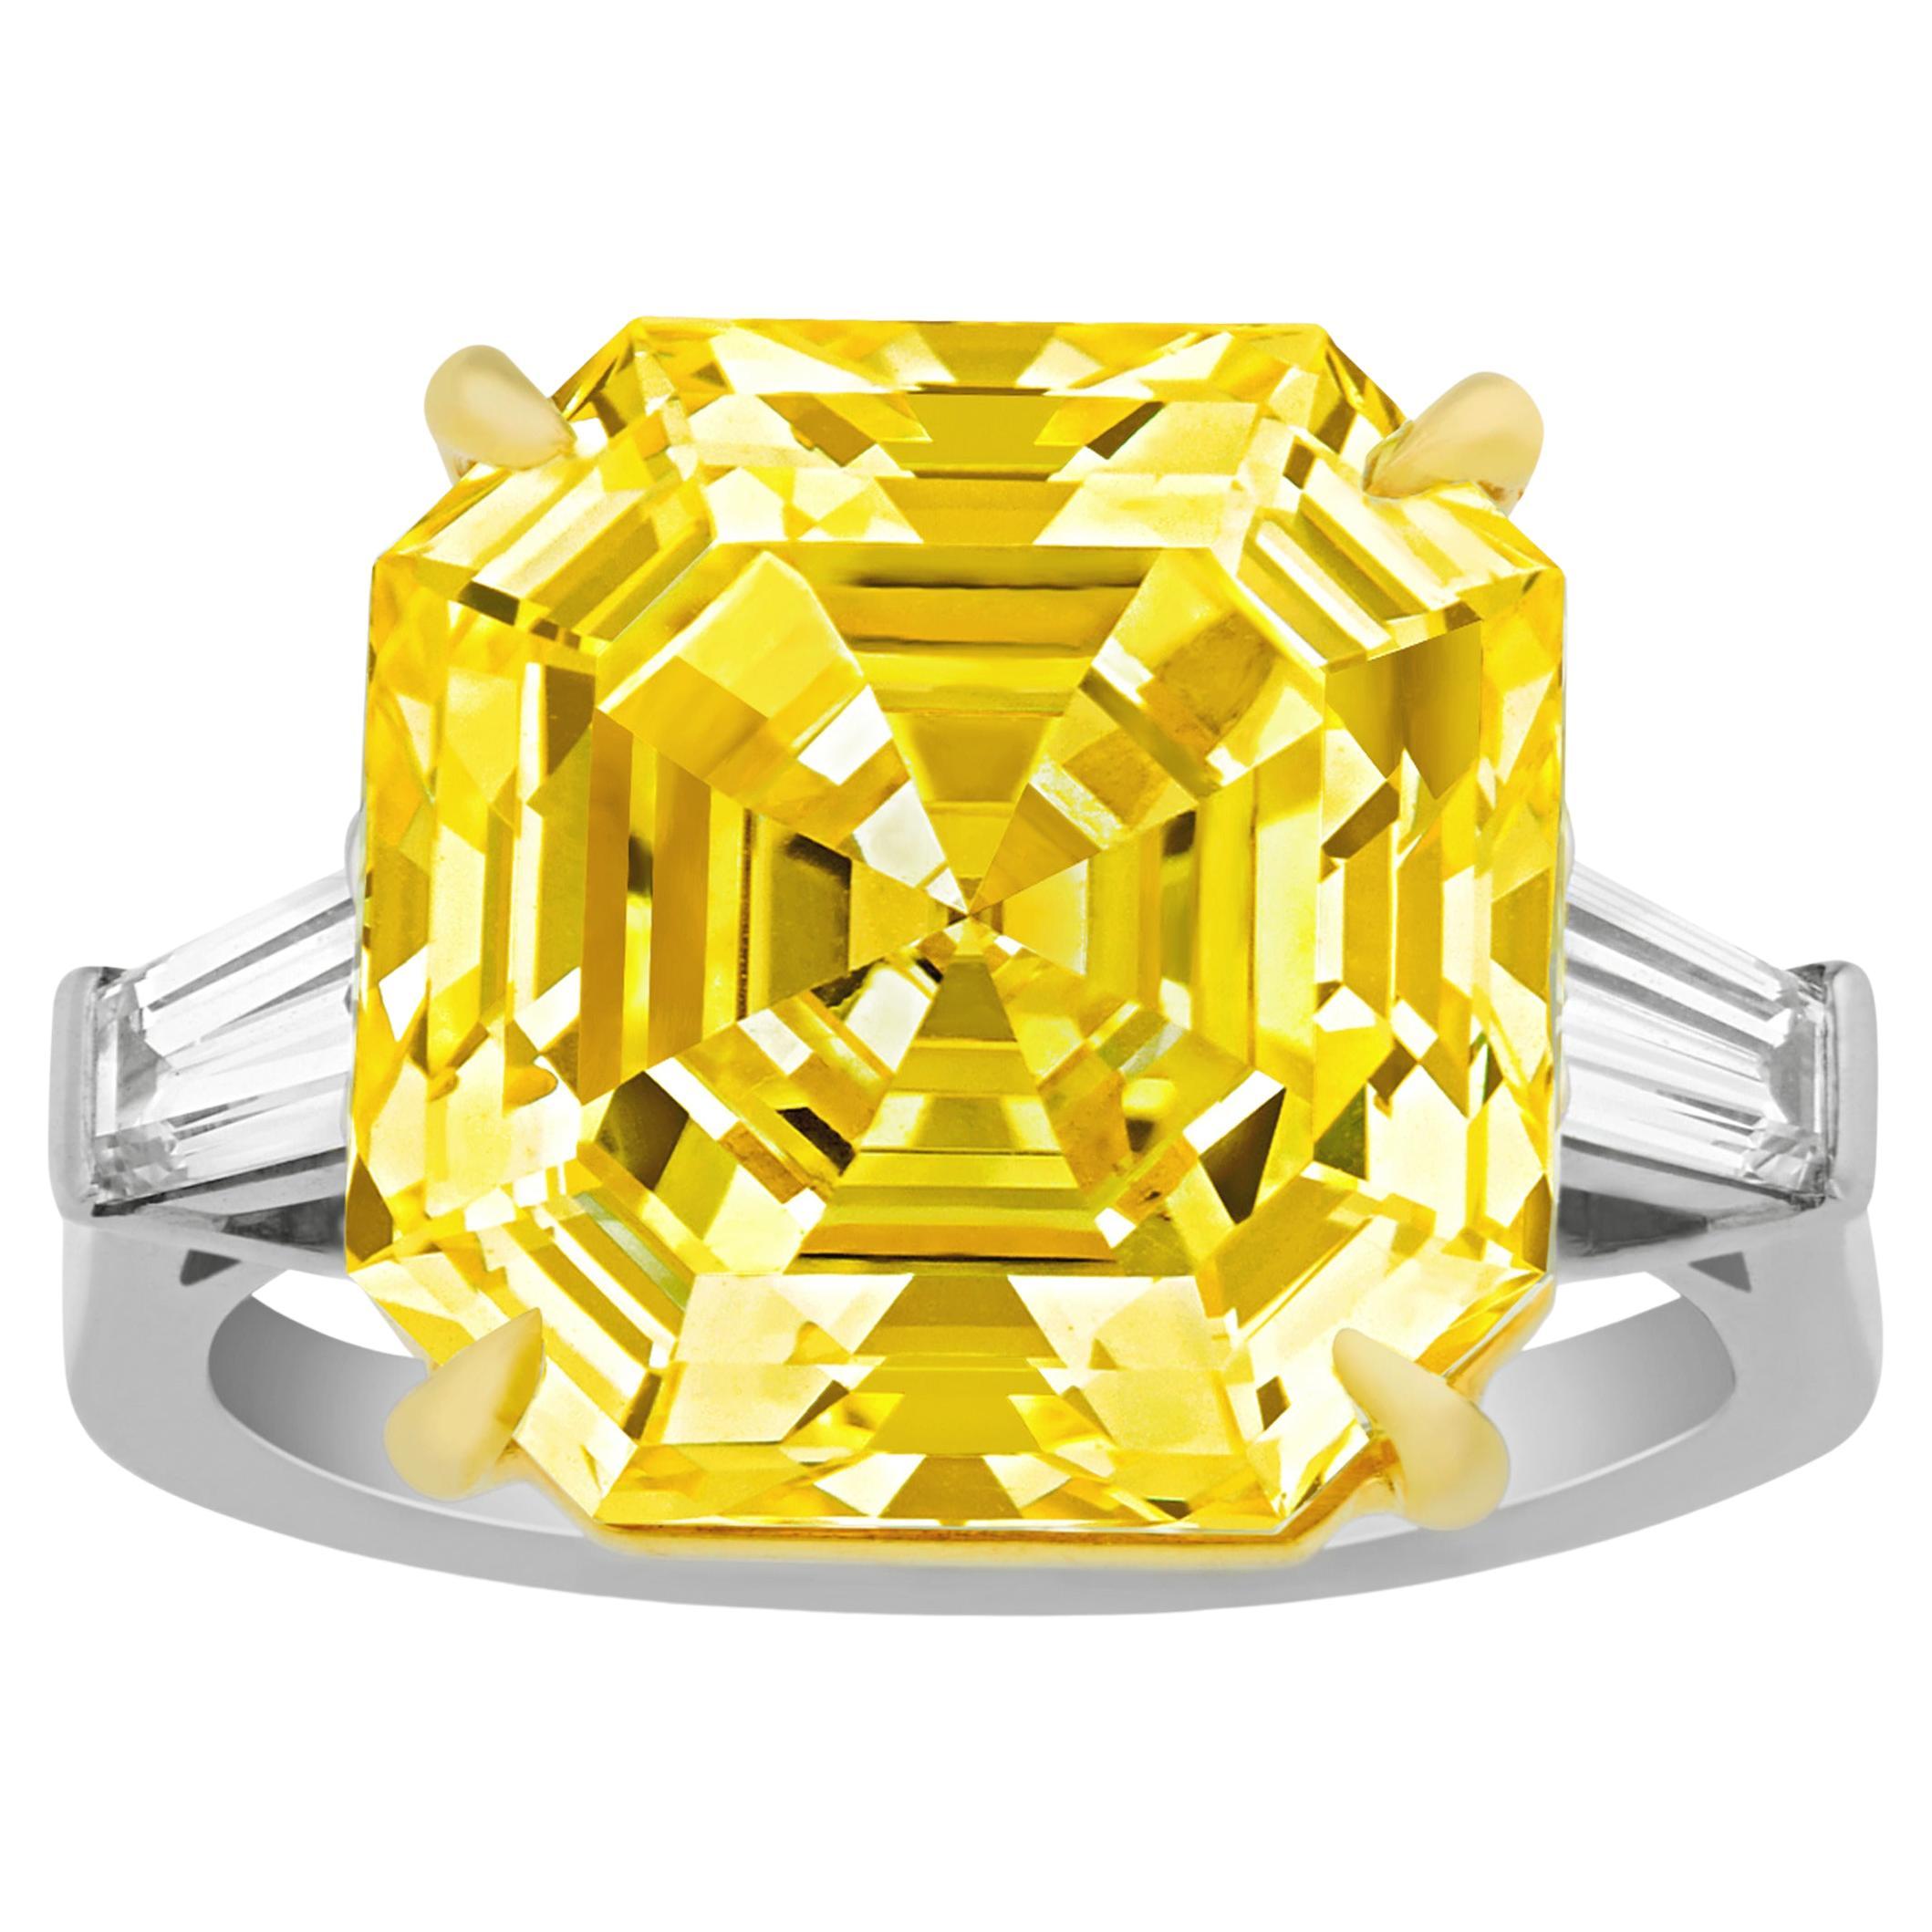 Asscher-Cut Fancy Intense Yellow Diamond Ring, 12.33 Carats